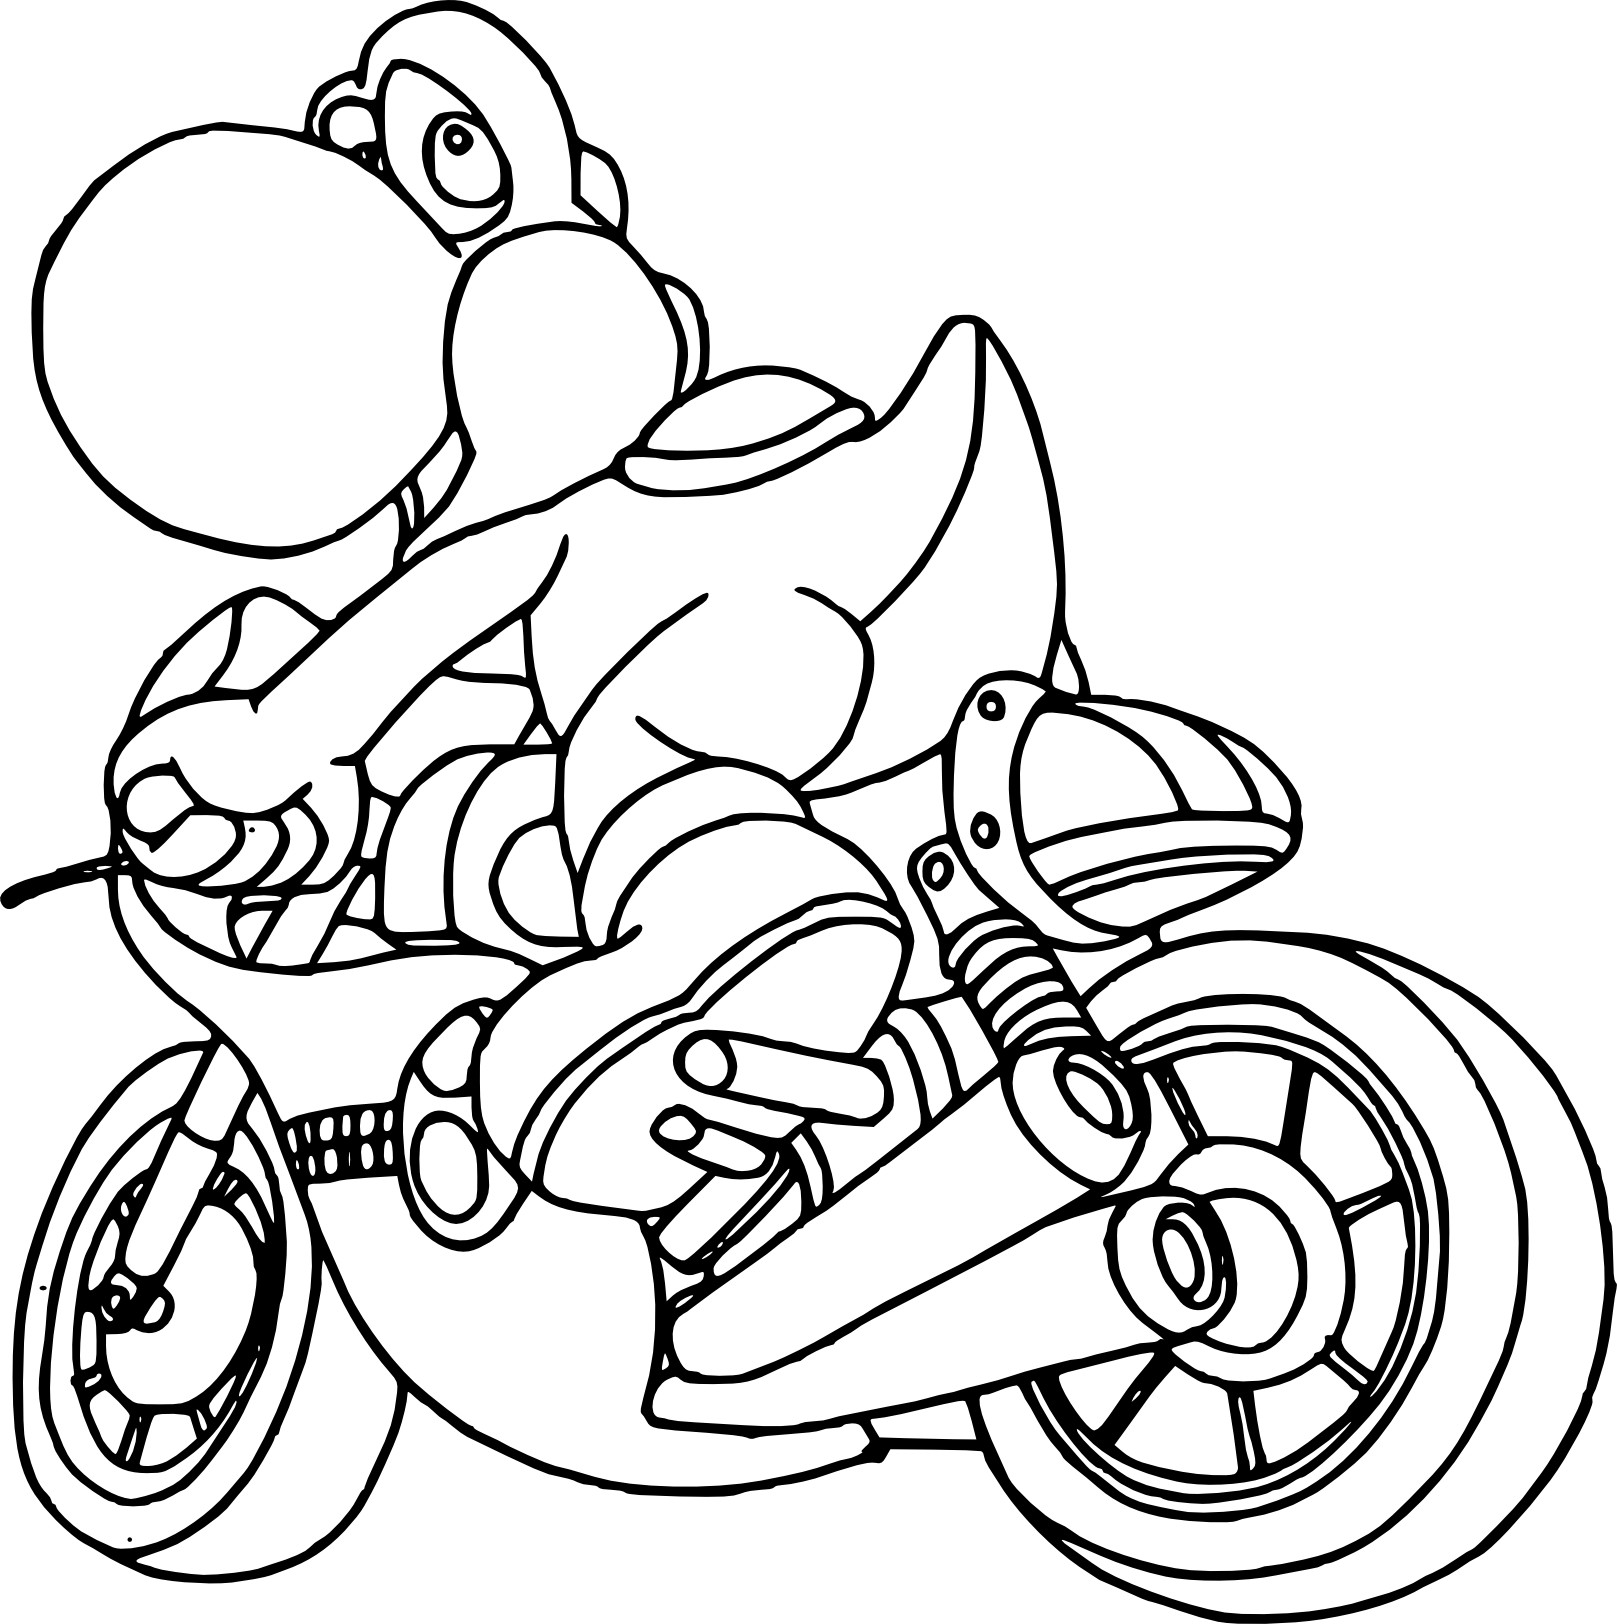 Disegno di Yoshi in moto da colorare